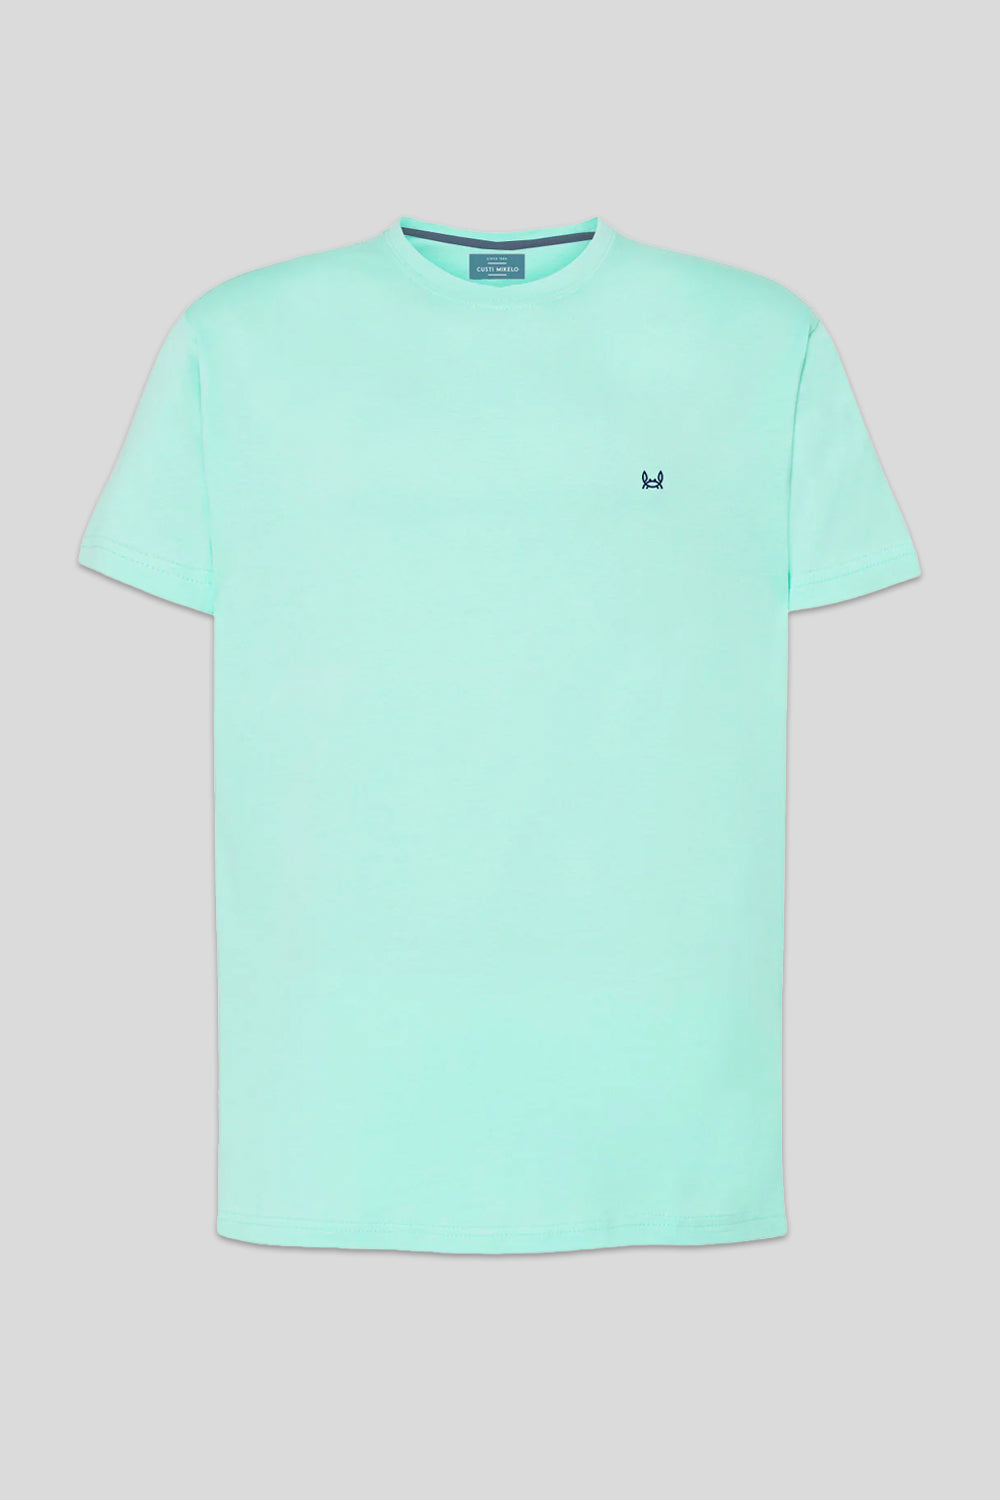 Camiseta básica verde azulado